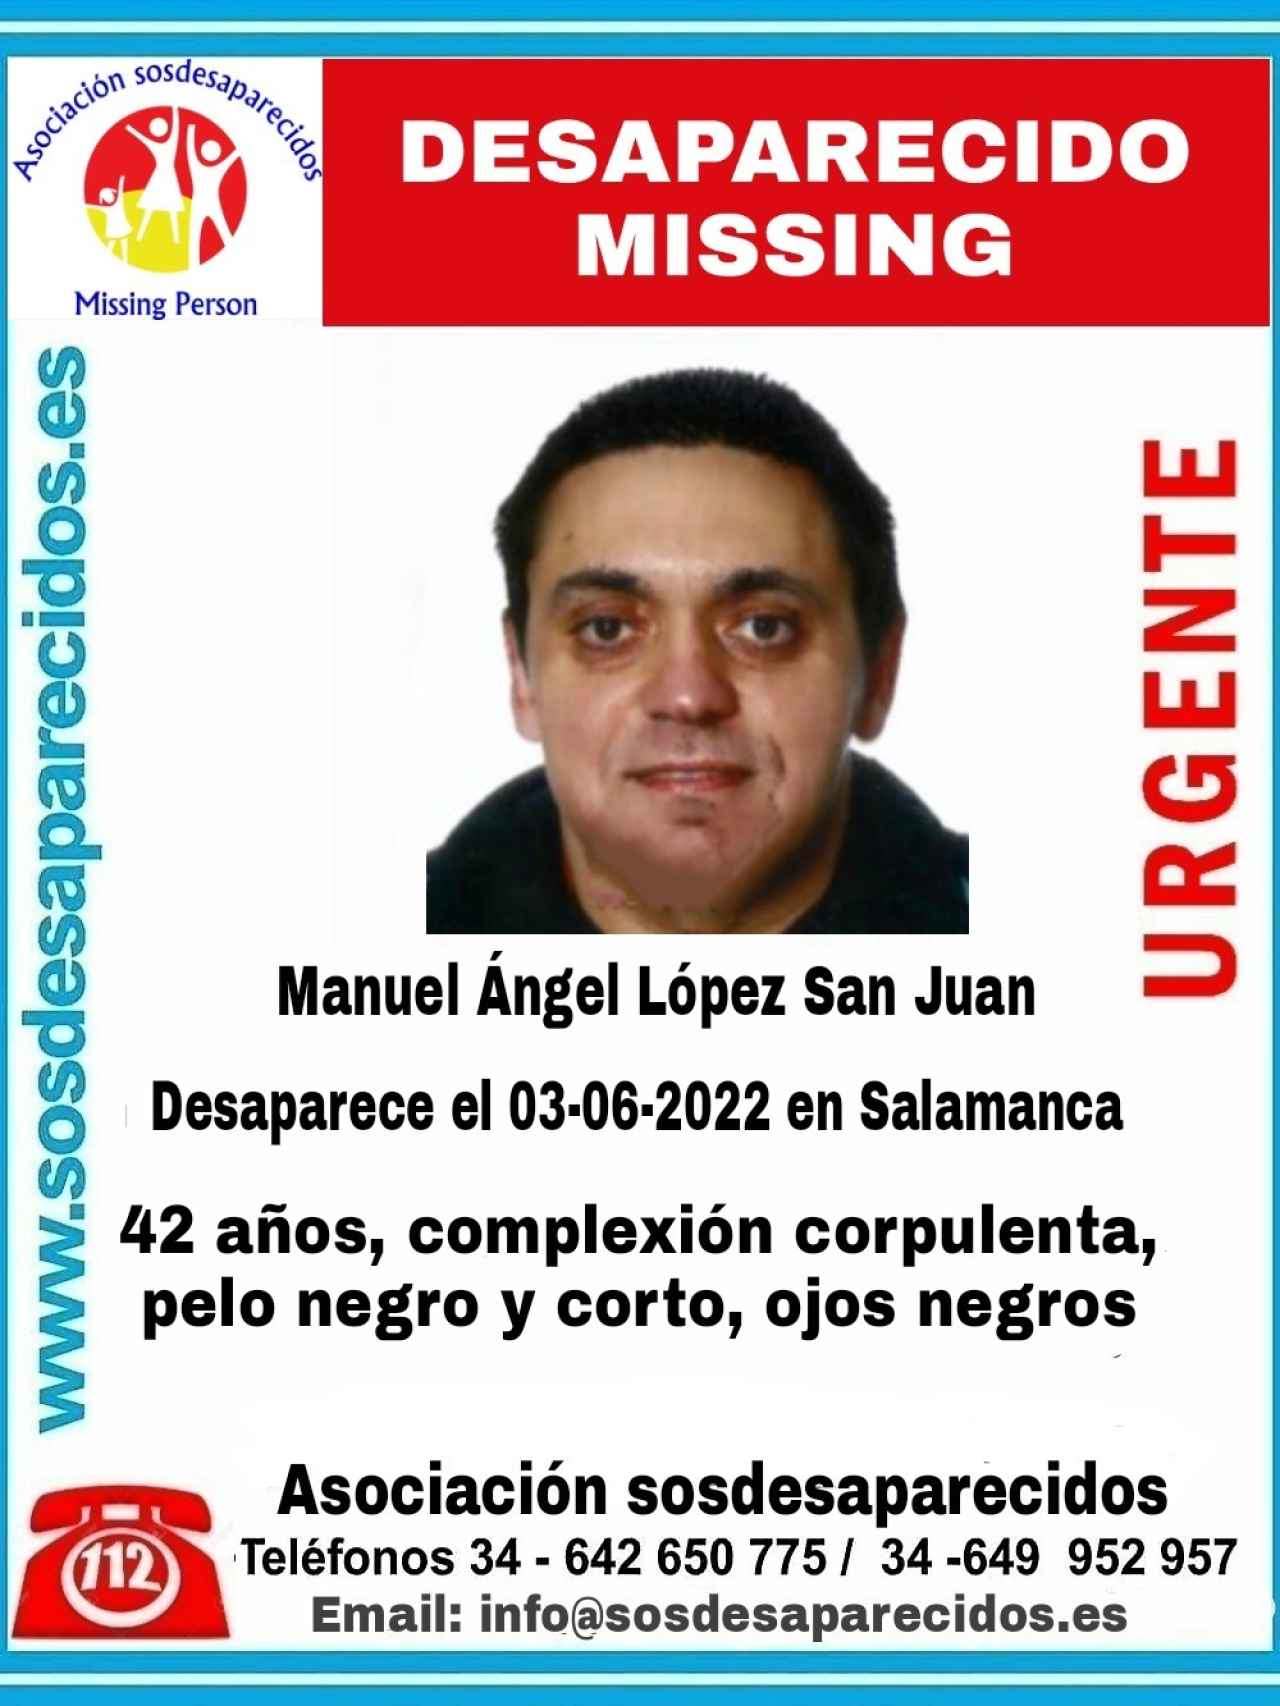 Manuel Ángel López, el hombre desaparecido en Salamanca